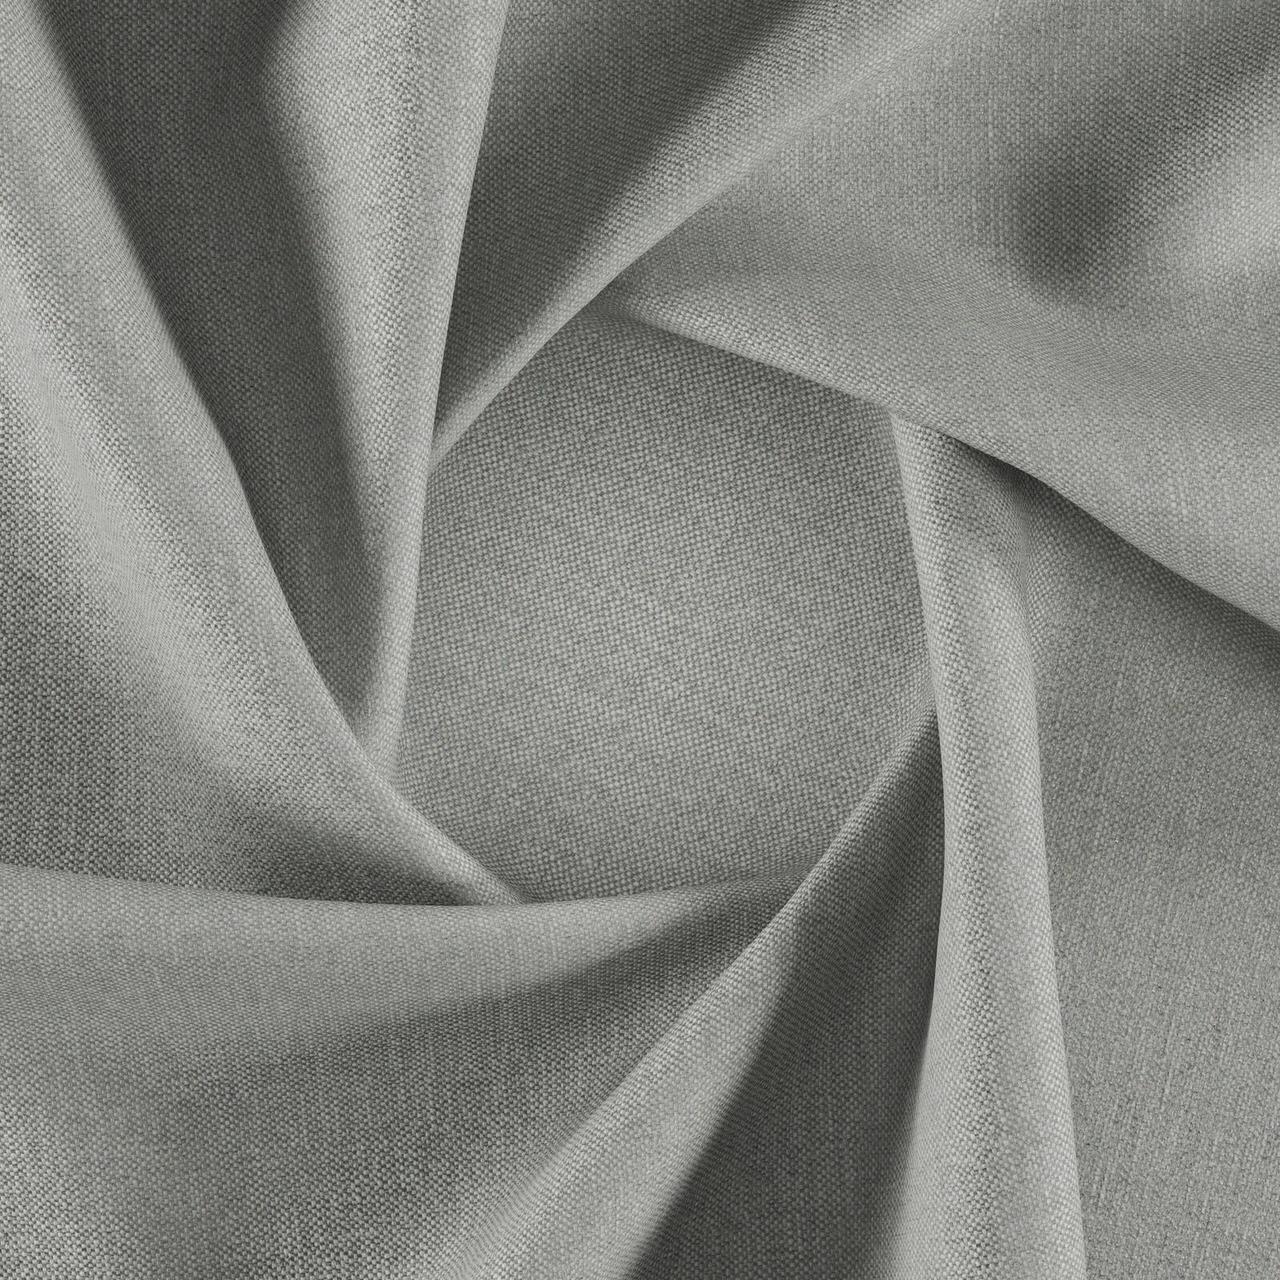 Тканина для перетяжки м'яких меблів шеніл Перфекто (Perfecto) алюмінієвого кольору